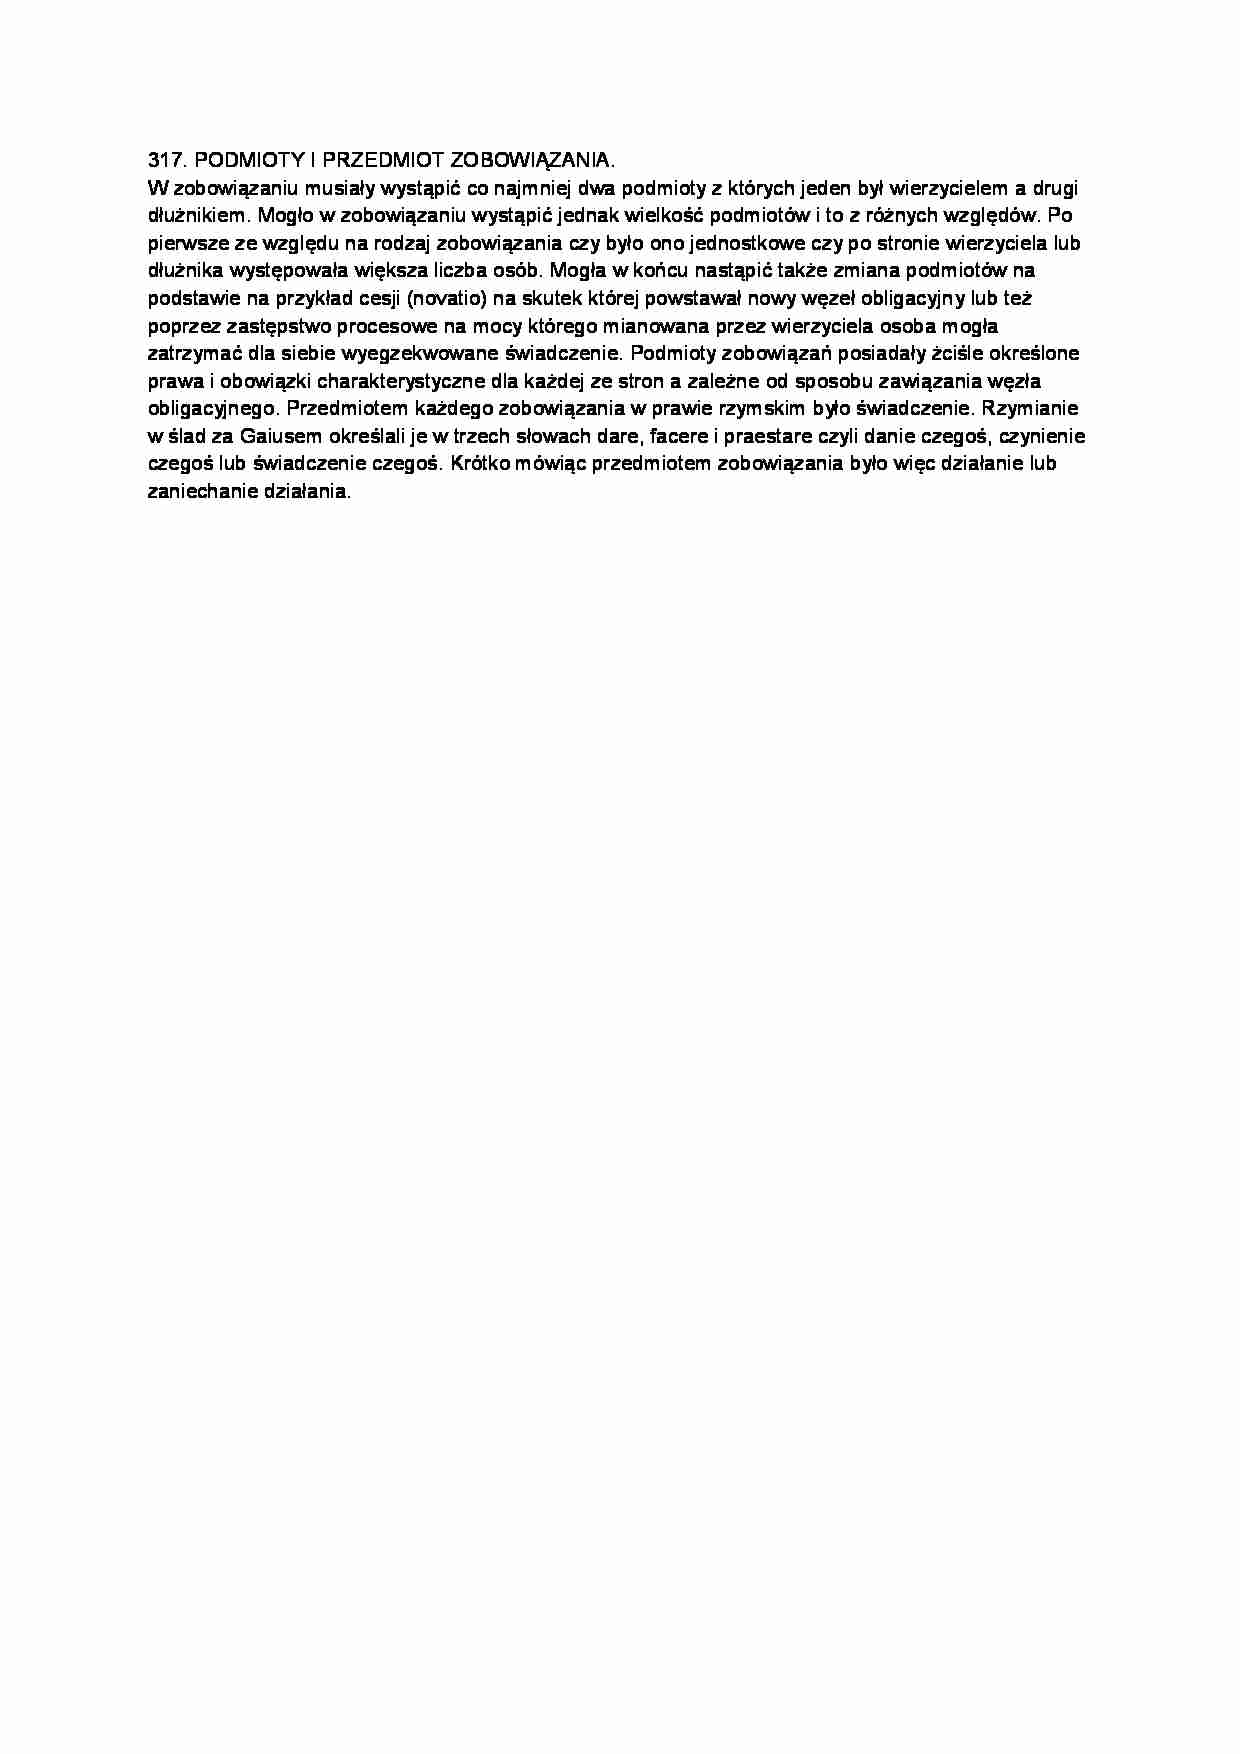 Podmoity i przedmiot zobowiązania-opracowanie - strona 1